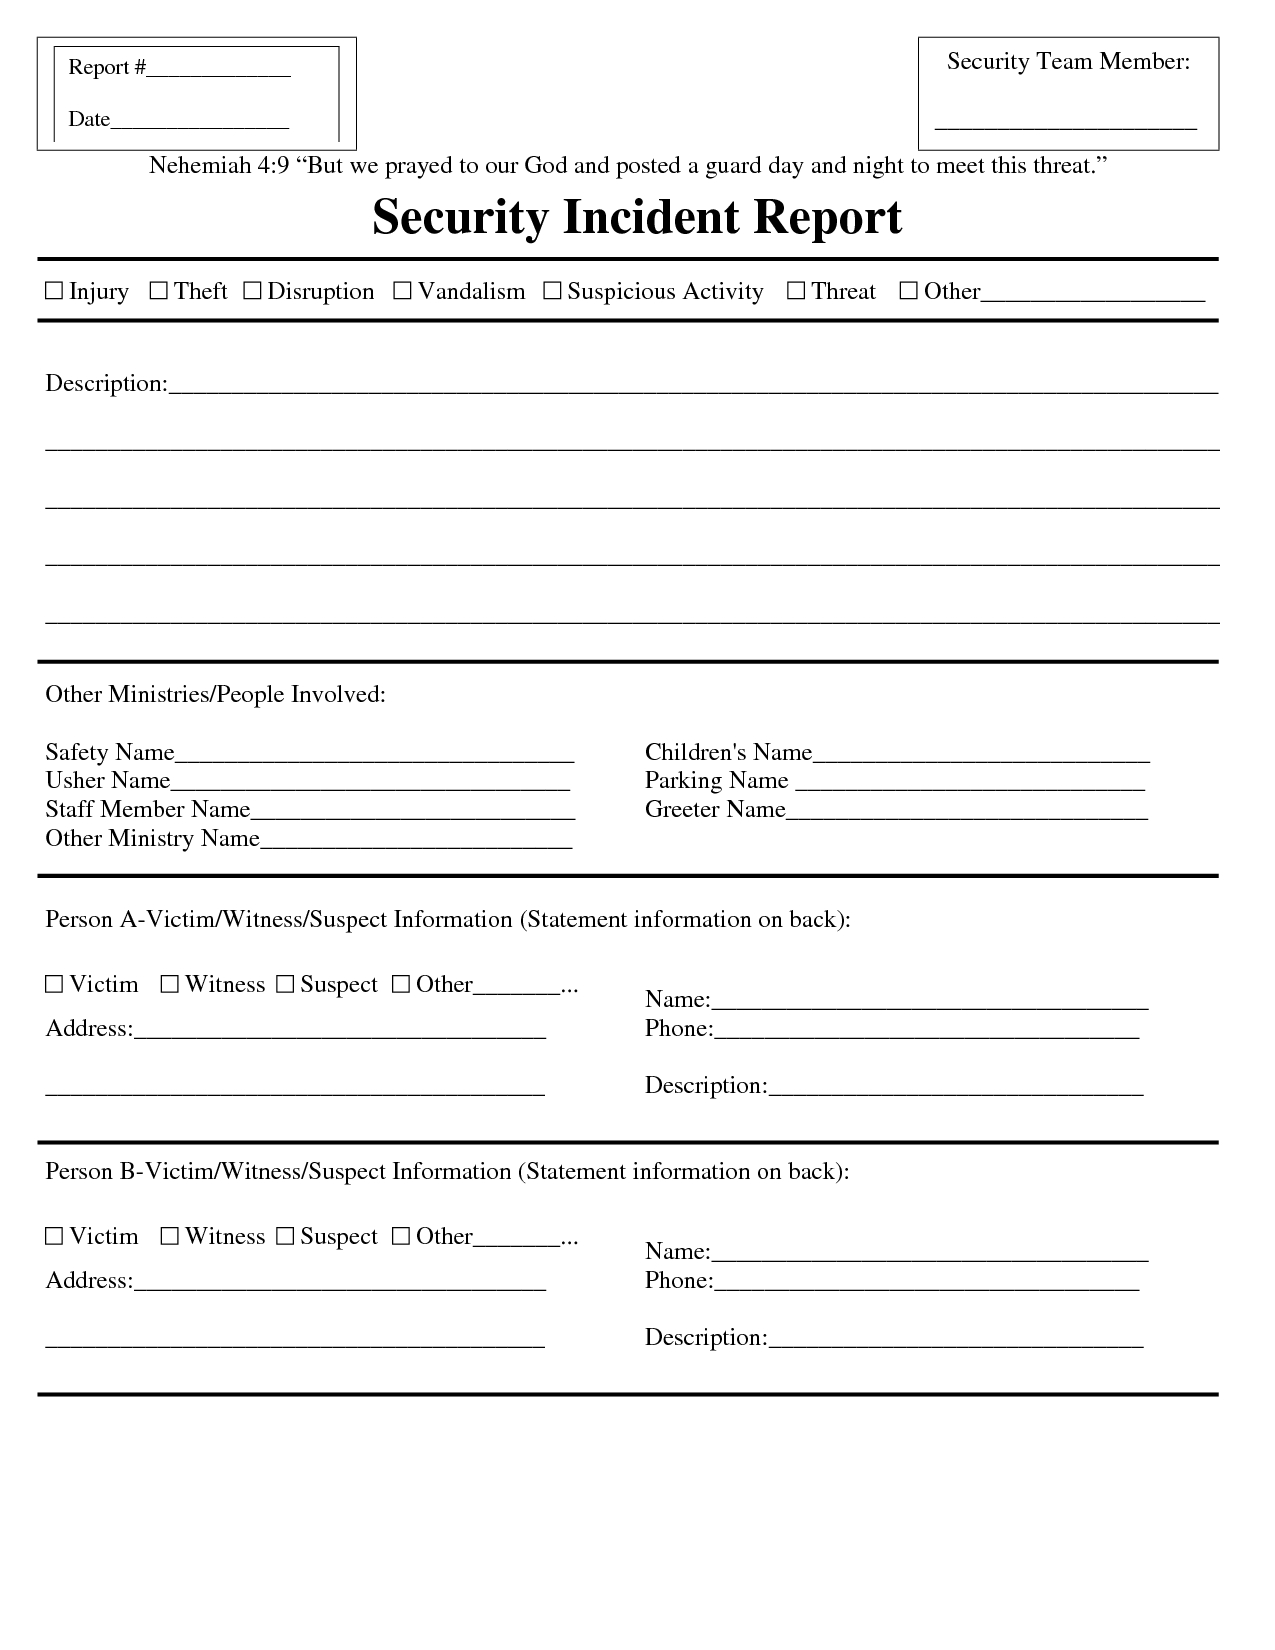 Premium Blank Security Incident Report Template Sample Pertaining To Incident Report Template Microsoft